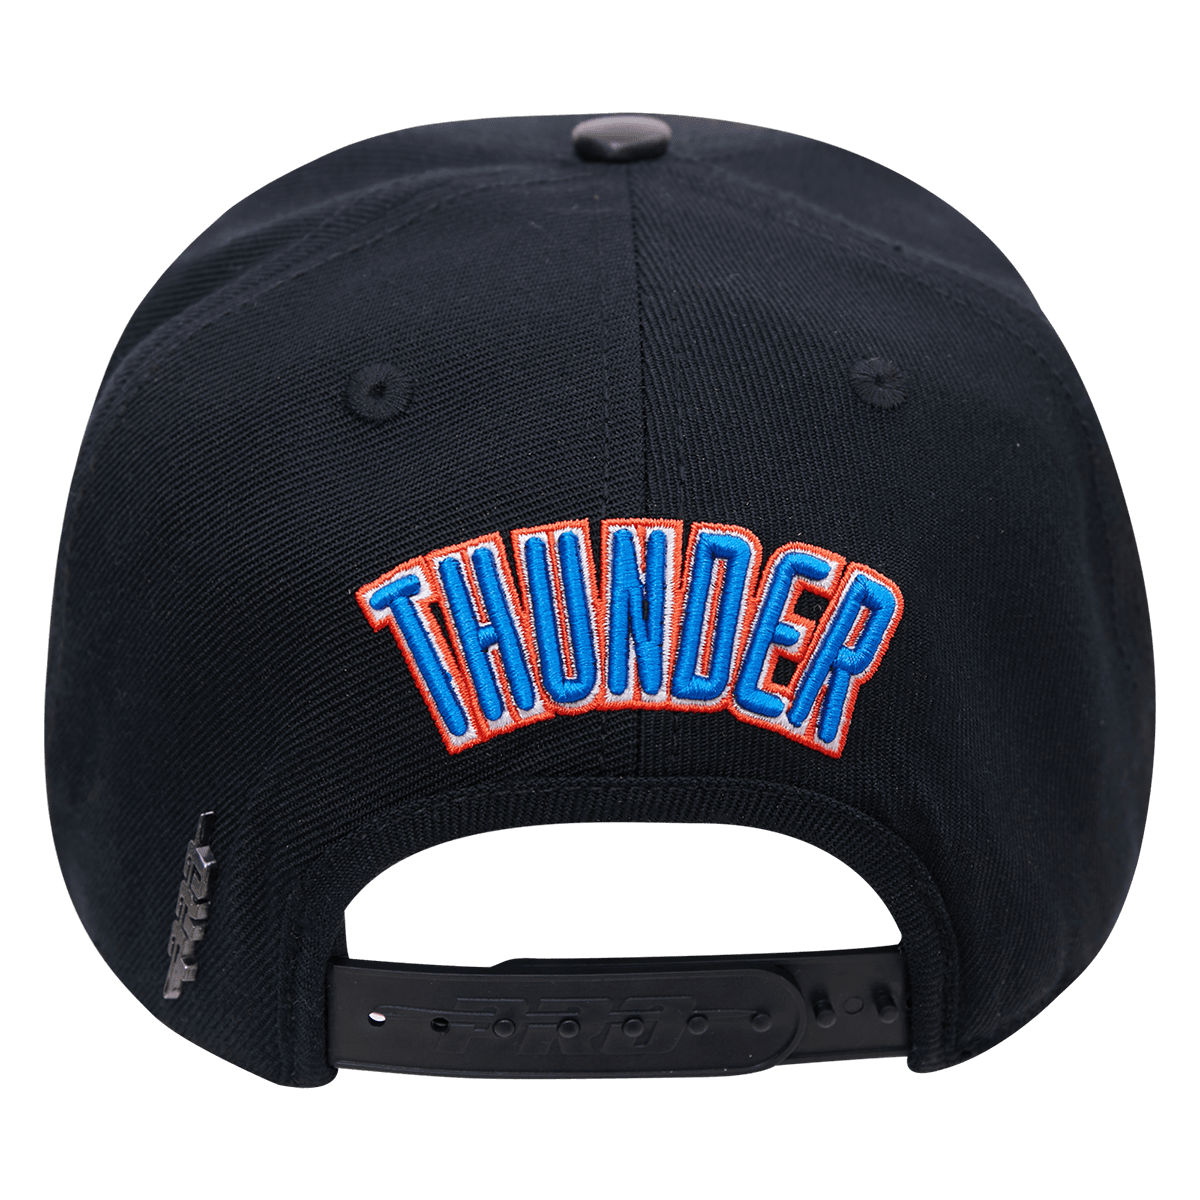 OKLAHOMA CITY THUNDER CLASSIC LOGO SNAPBACK HAT (BLACK)